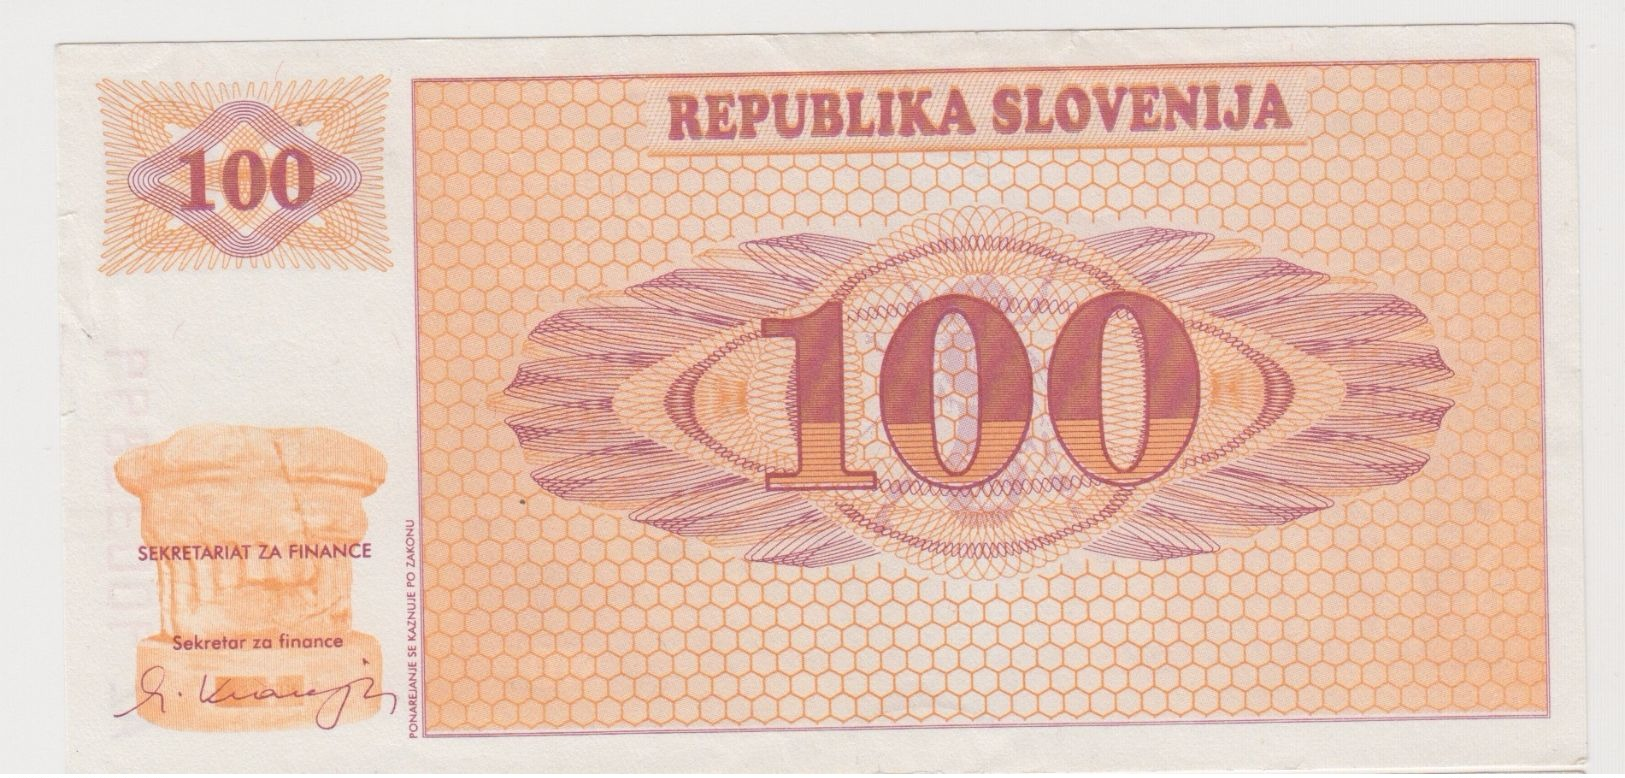 SLOVENIE 100 Tolarjev 1990 P6a VF+ - Eslovenia